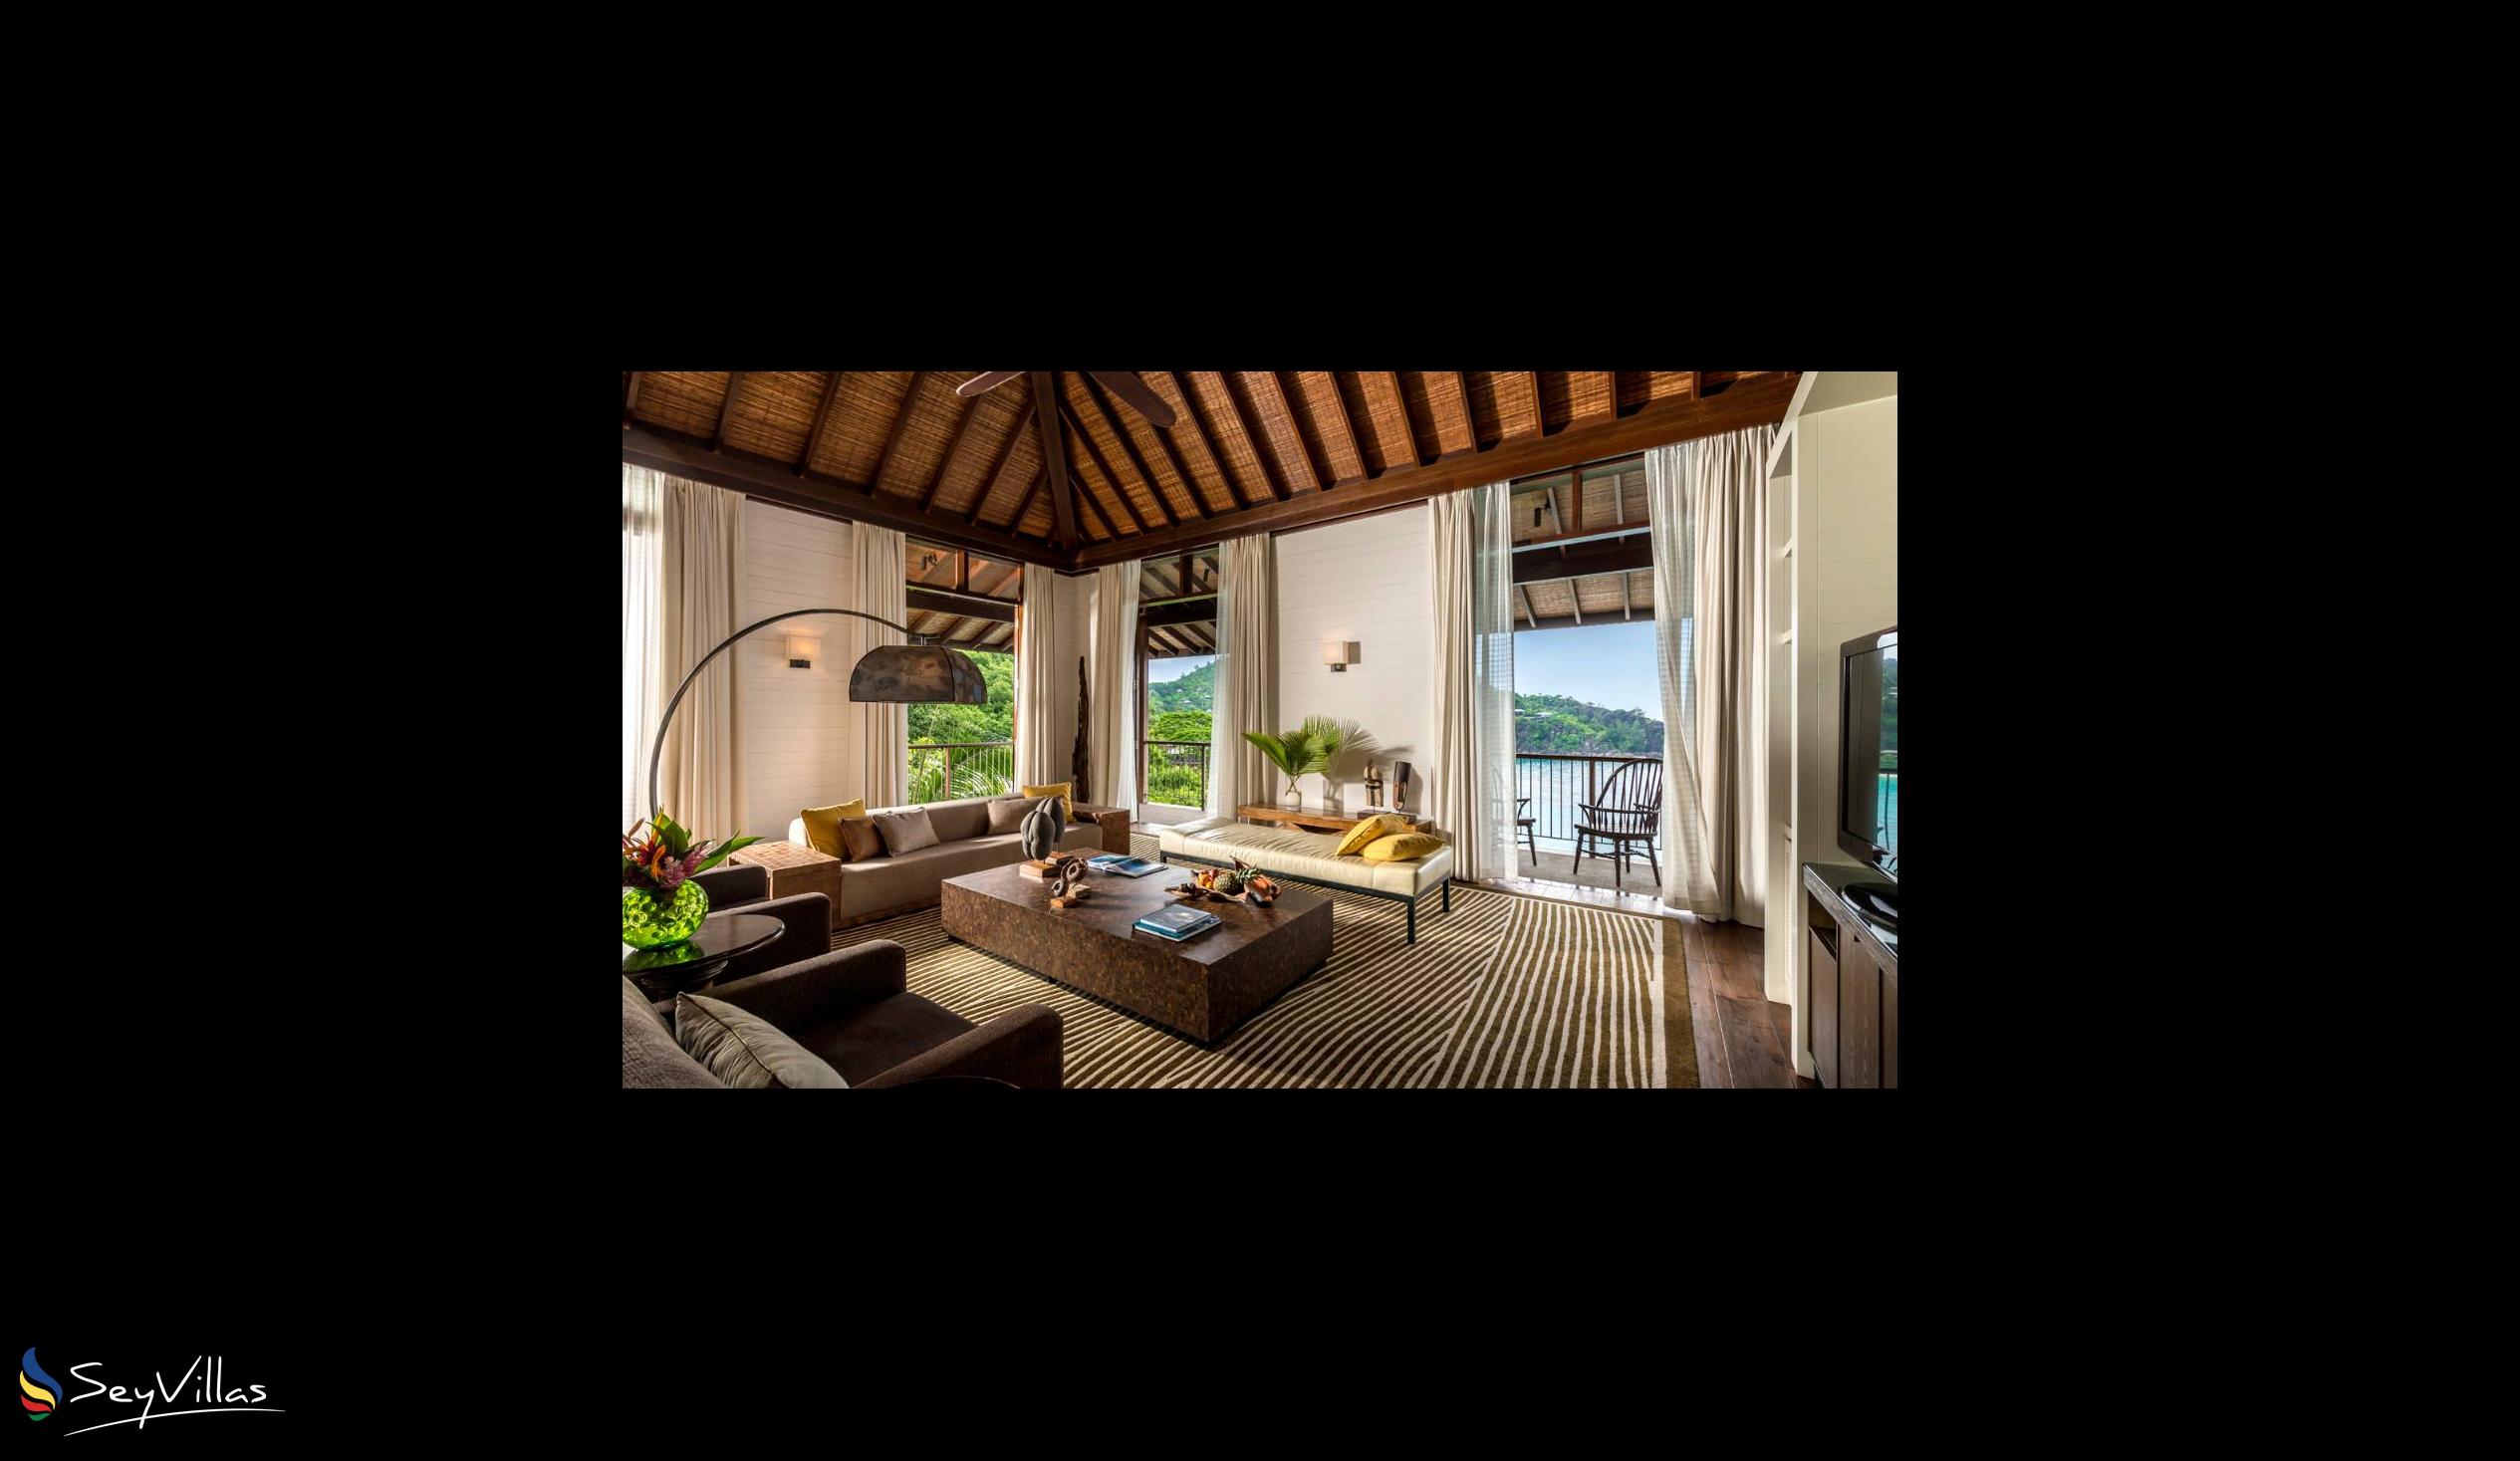 Foto 67: Four Seasons Resort - 4-Bedroom Residence Villa - Mahé (Seychellen)